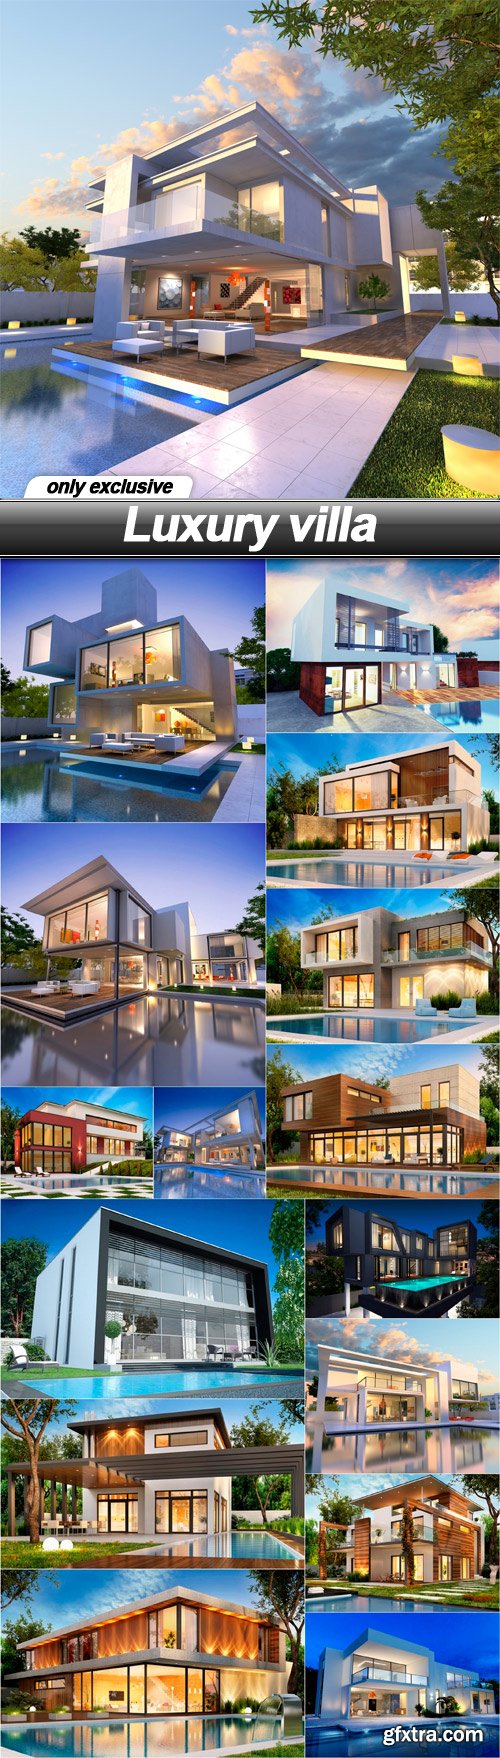 Luxury villa - 16 UHQ JPEG